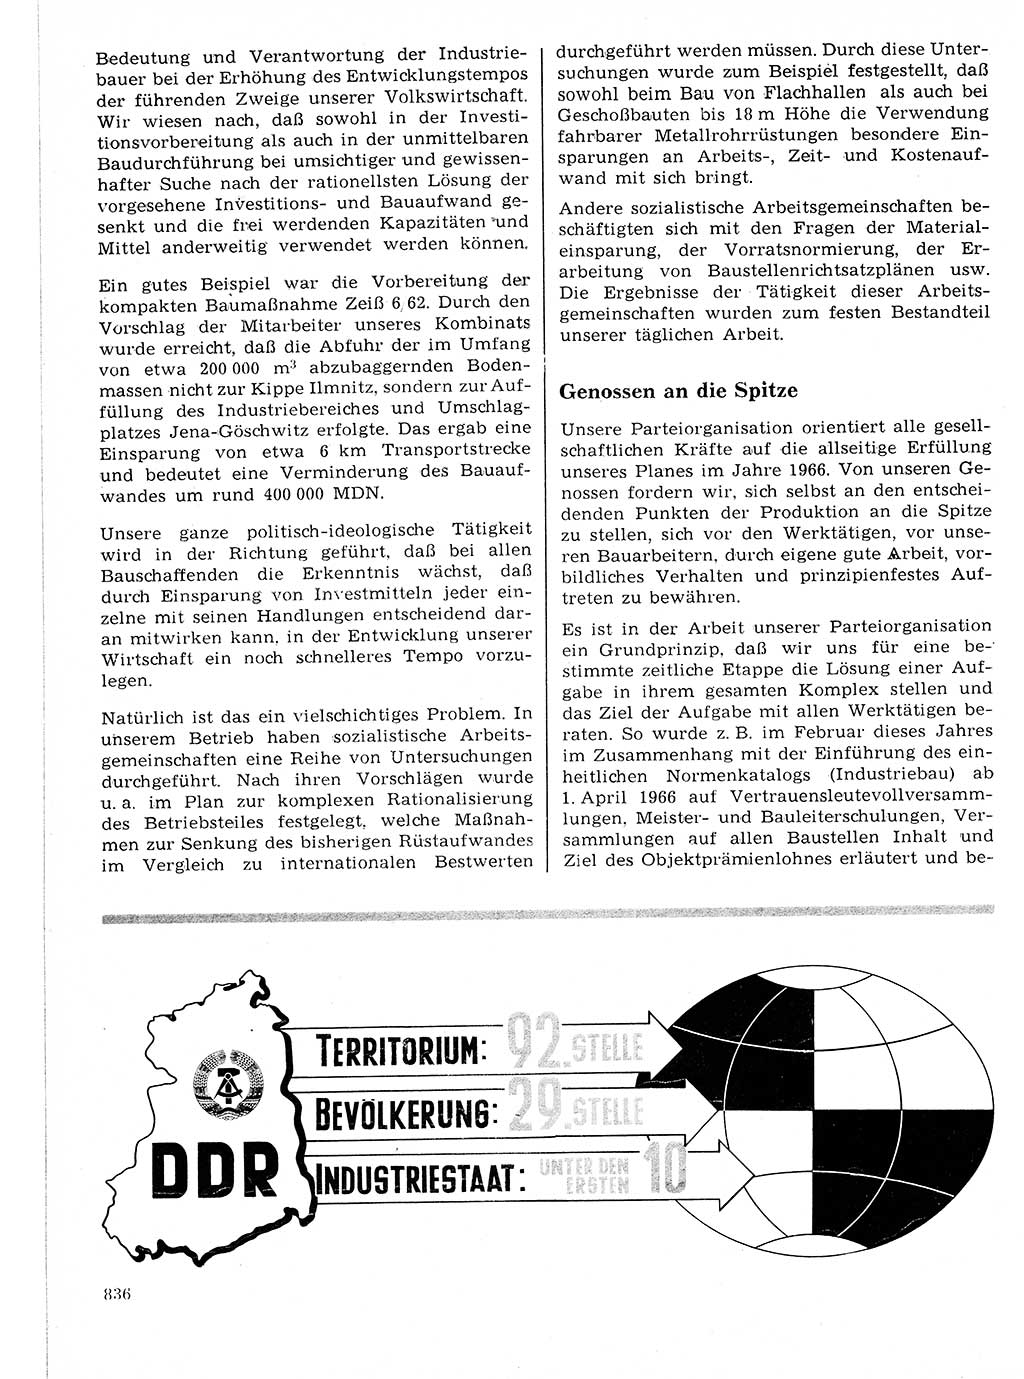 Neuer Weg (NW), Organ des Zentralkomitees (ZK) der SED (Sozialistische Einheitspartei Deutschlands) für Fragen des Parteilebens, 21. Jahrgang [Deutsche Demokratische Republik (DDR)] 1966, Seite 836 (NW ZK SED DDR 1966, S. 836)